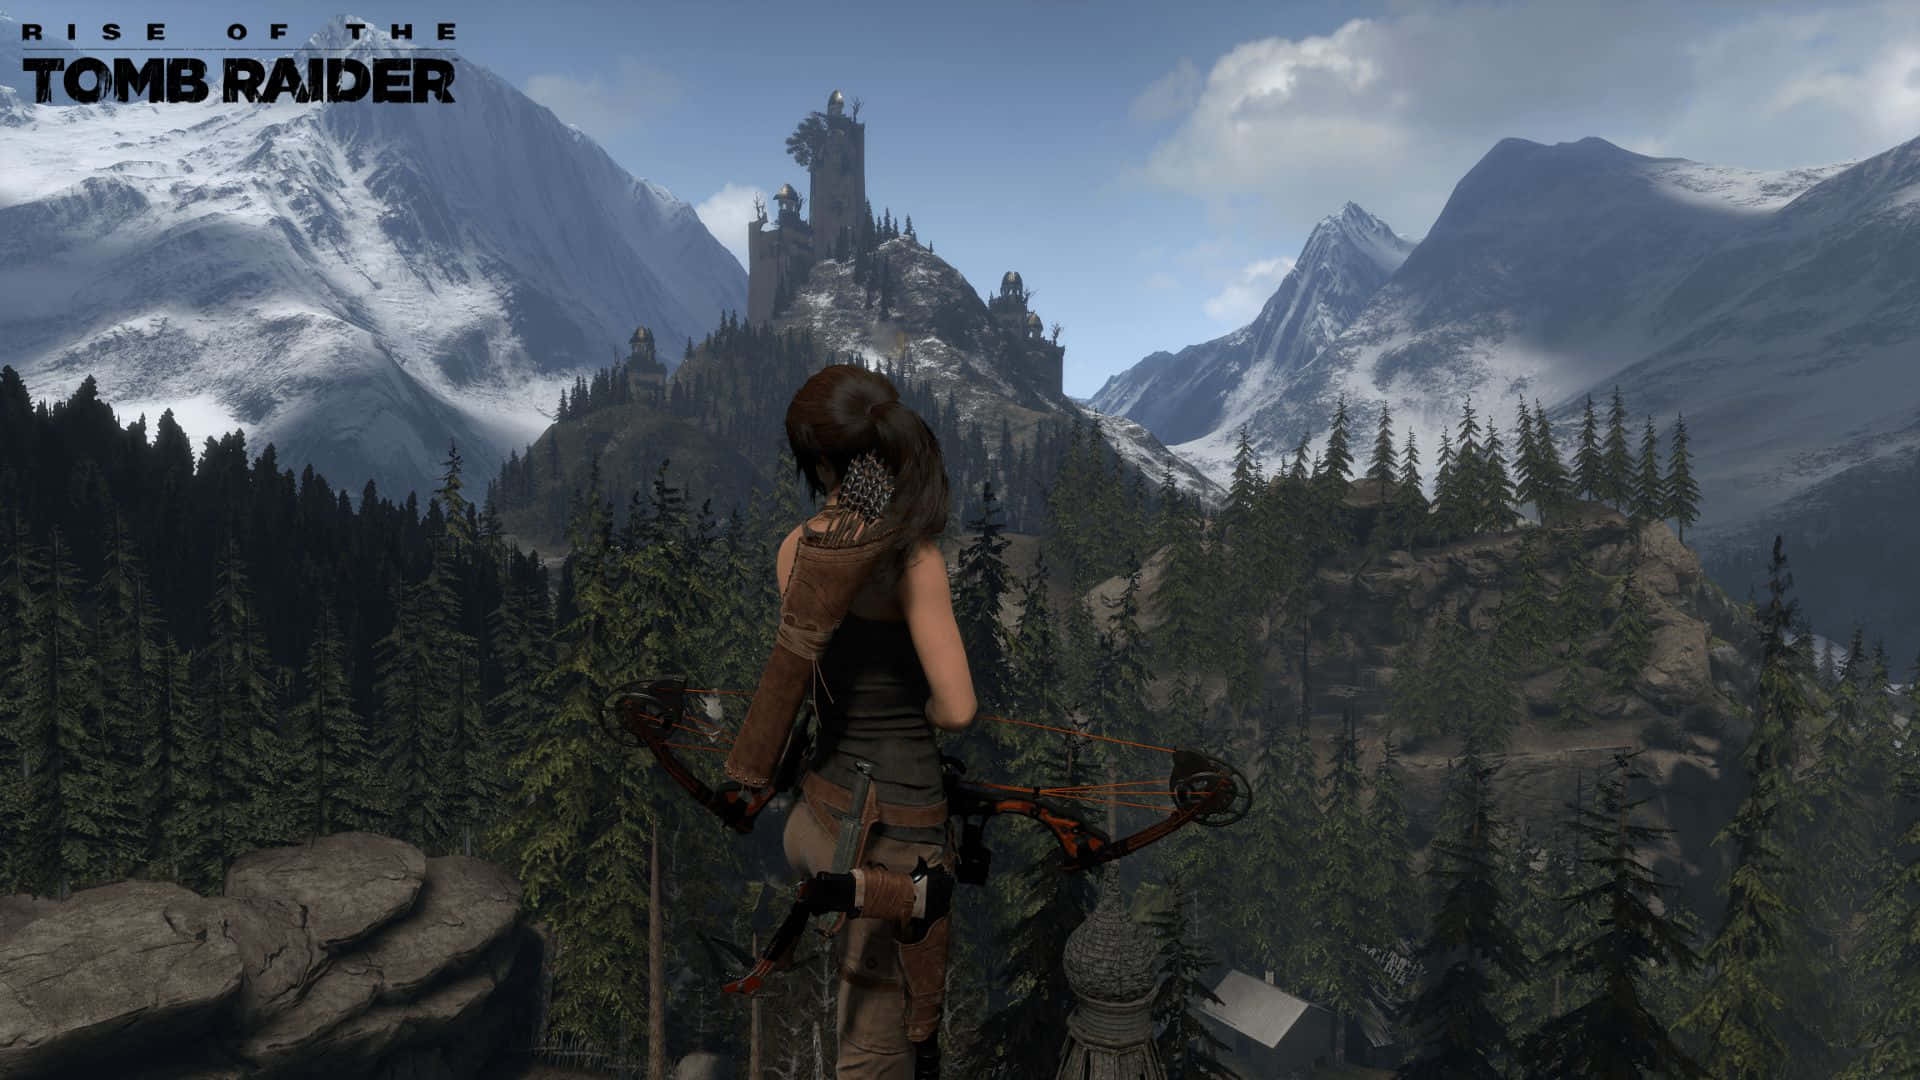 Laracroft In Azione - Sfondo Rise Of The Tomb Raider In 1080p